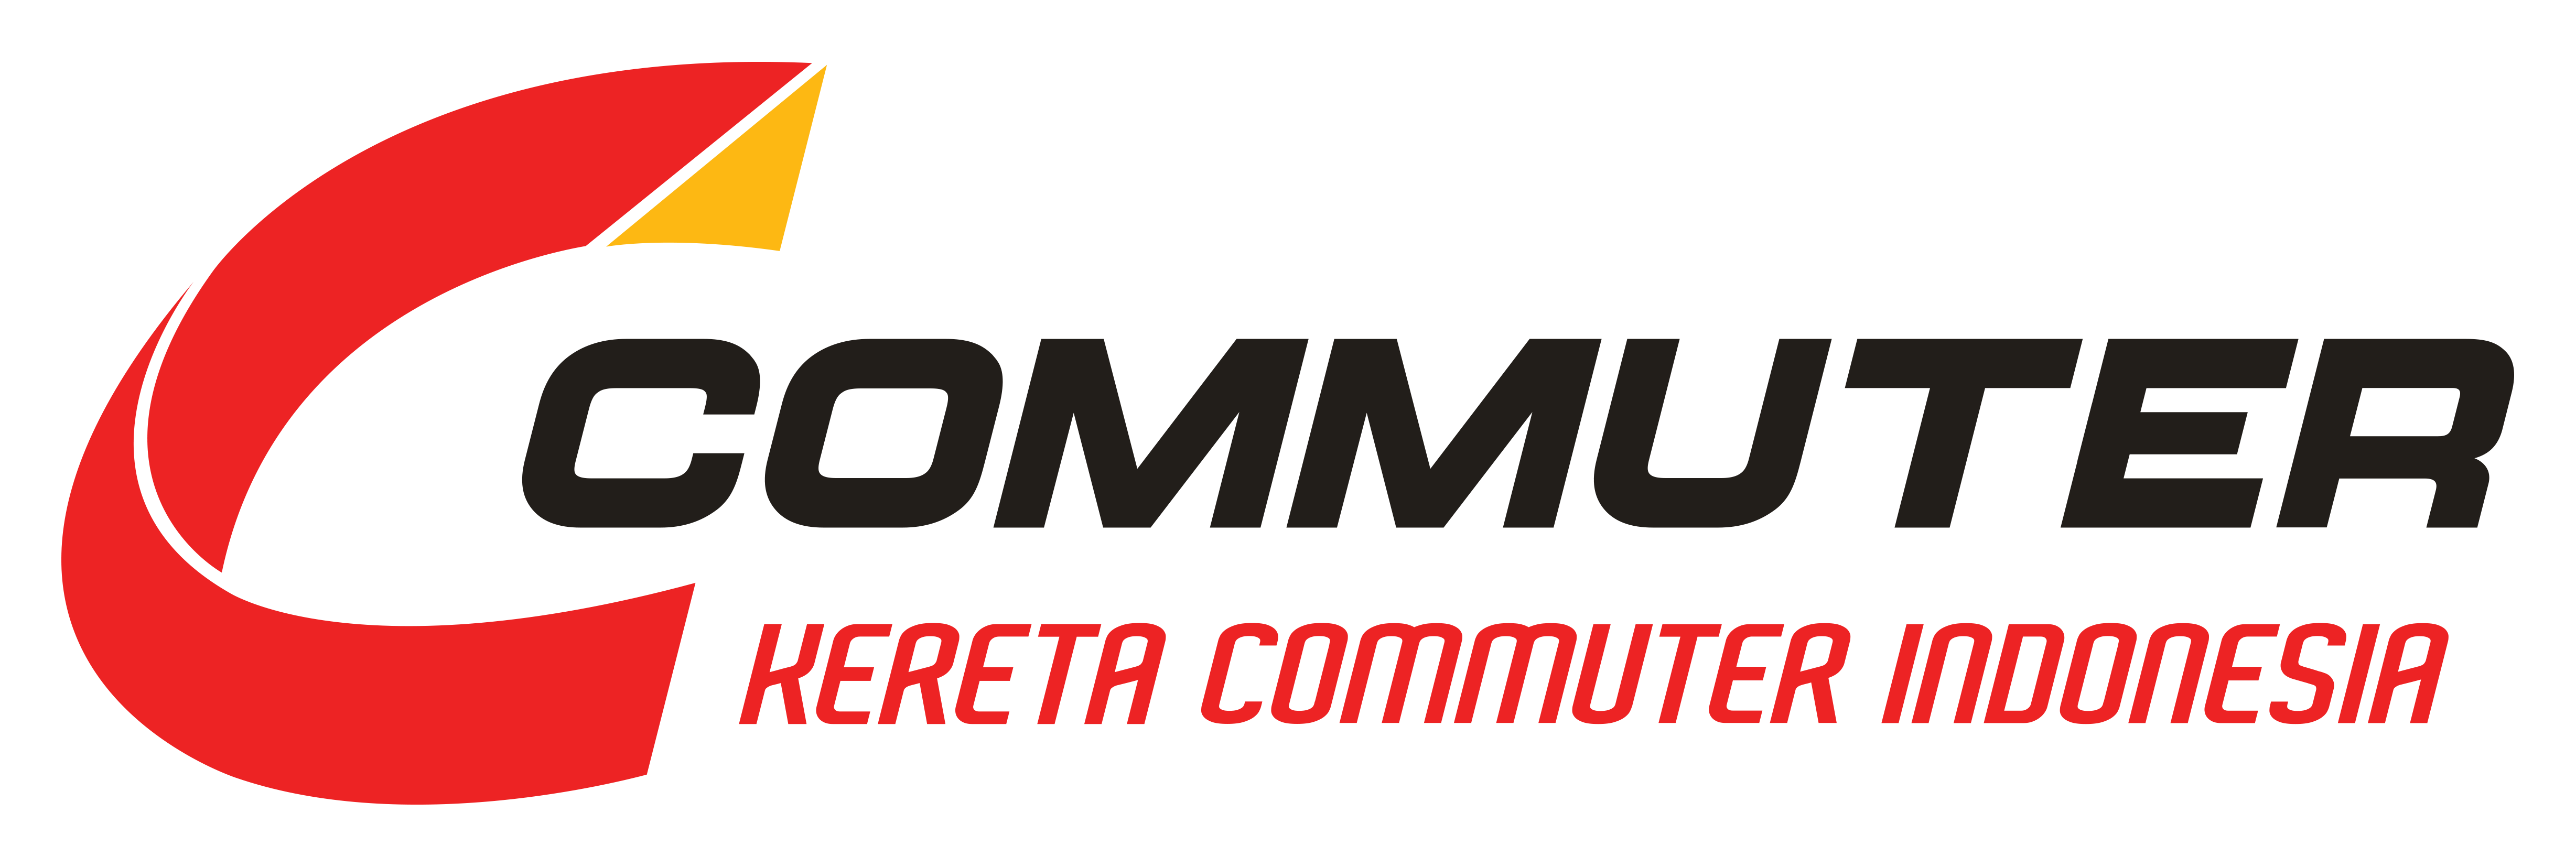 KRL Commuter Line - Jabodetabek Commuter Rail System ...